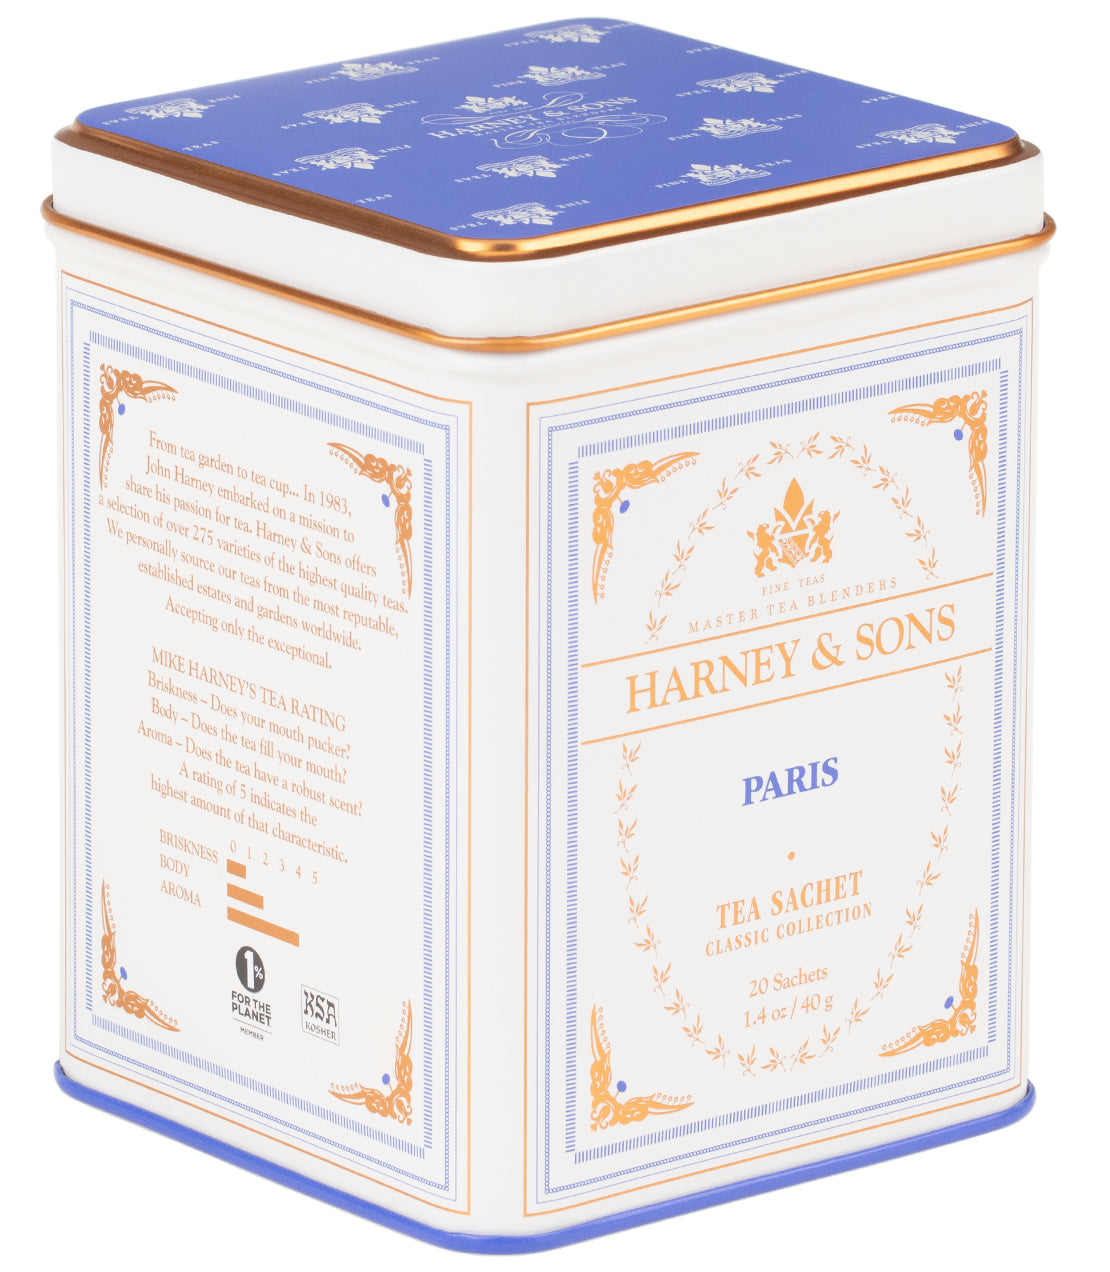 Paris - Sachets Classic Tin of 20 Sachets - Harney & Sons Fine Teas